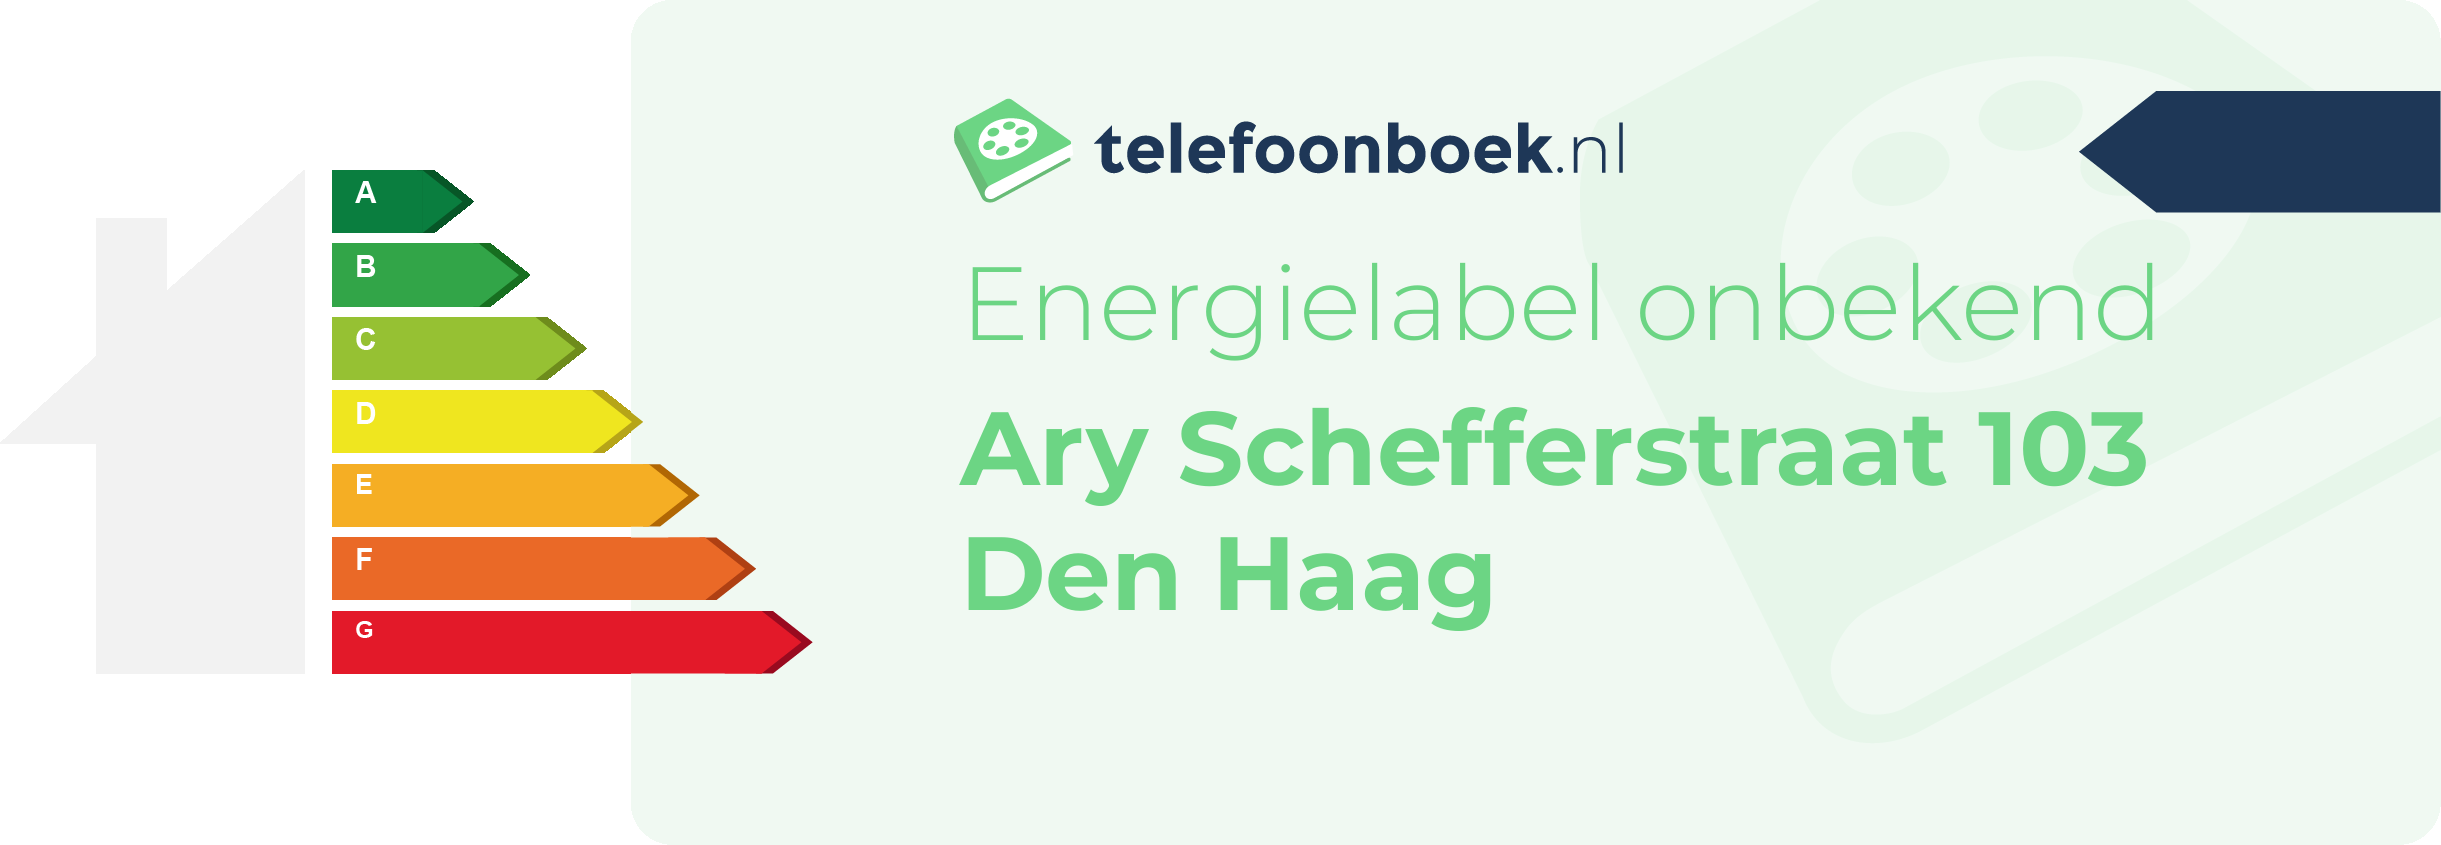 Energielabel Ary Schefferstraat 103 Den Haag